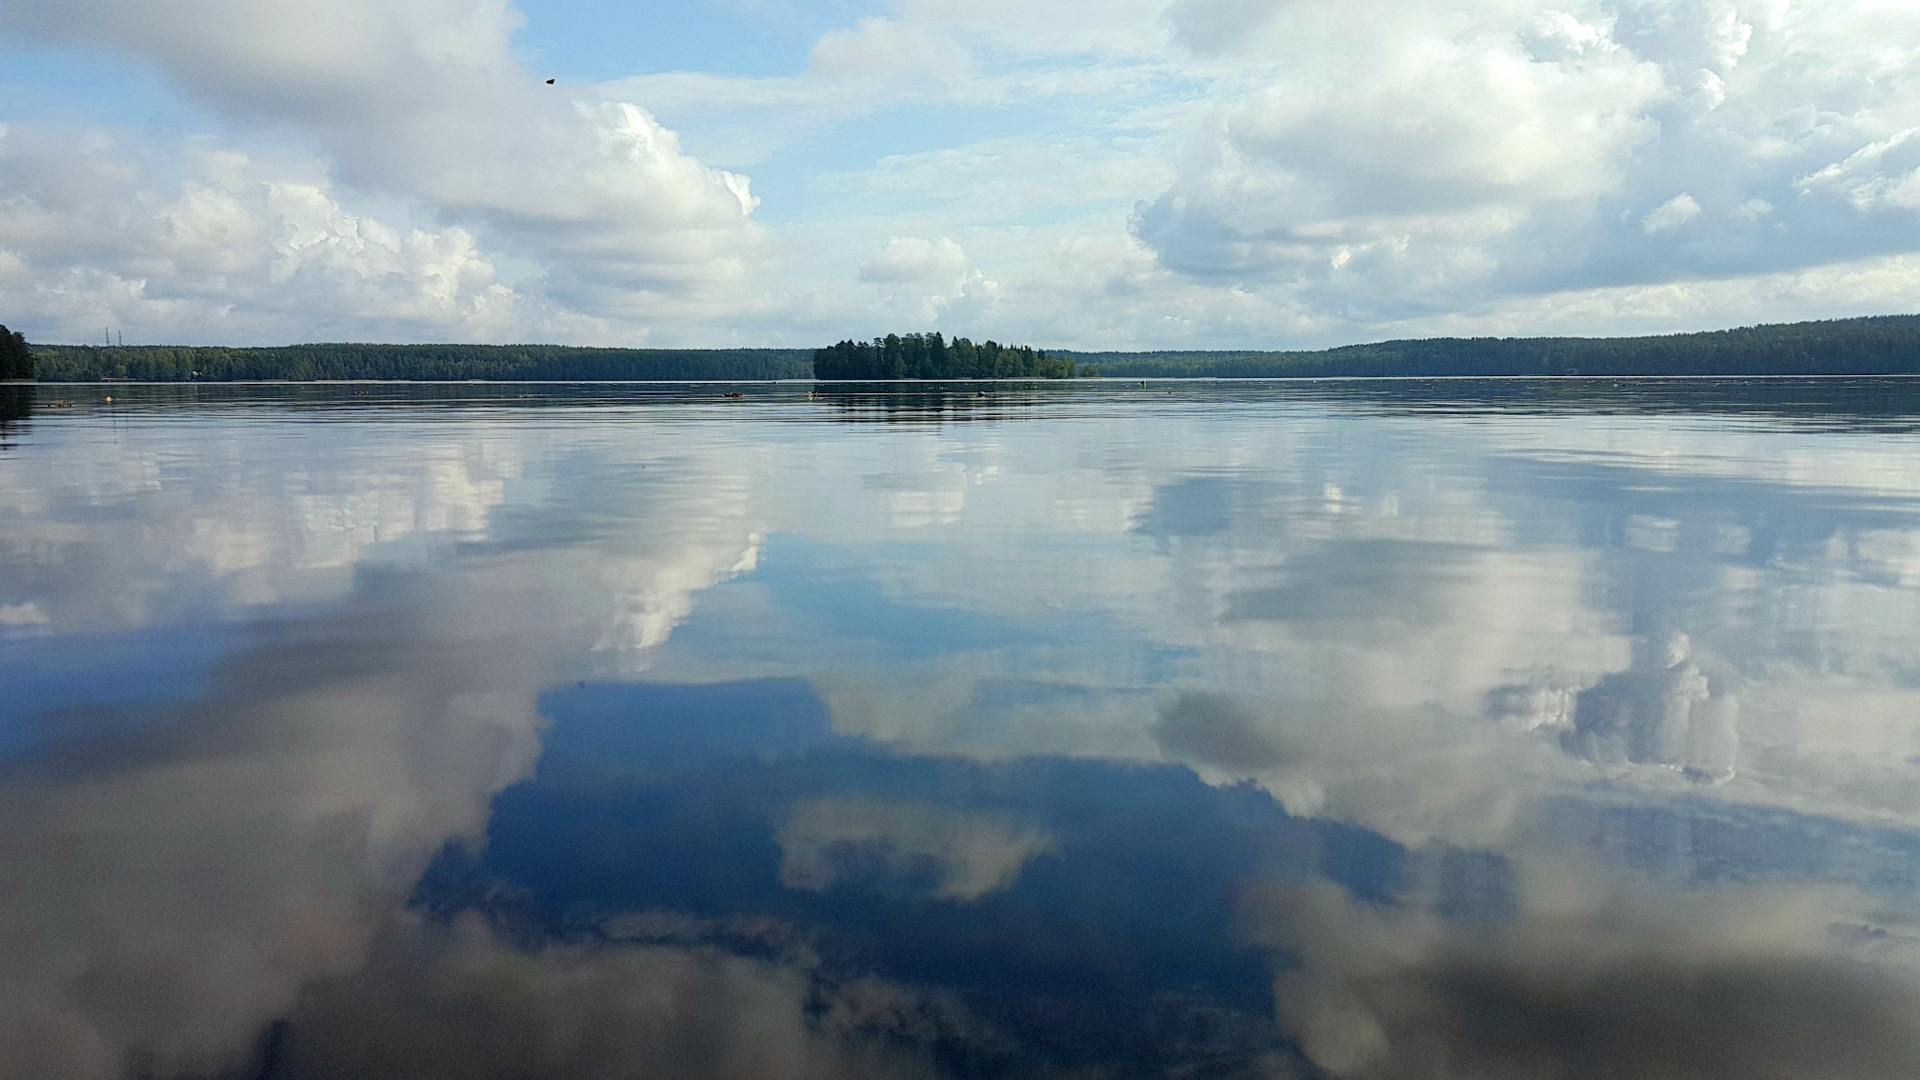 Озеро зеркальное Ленинградская область